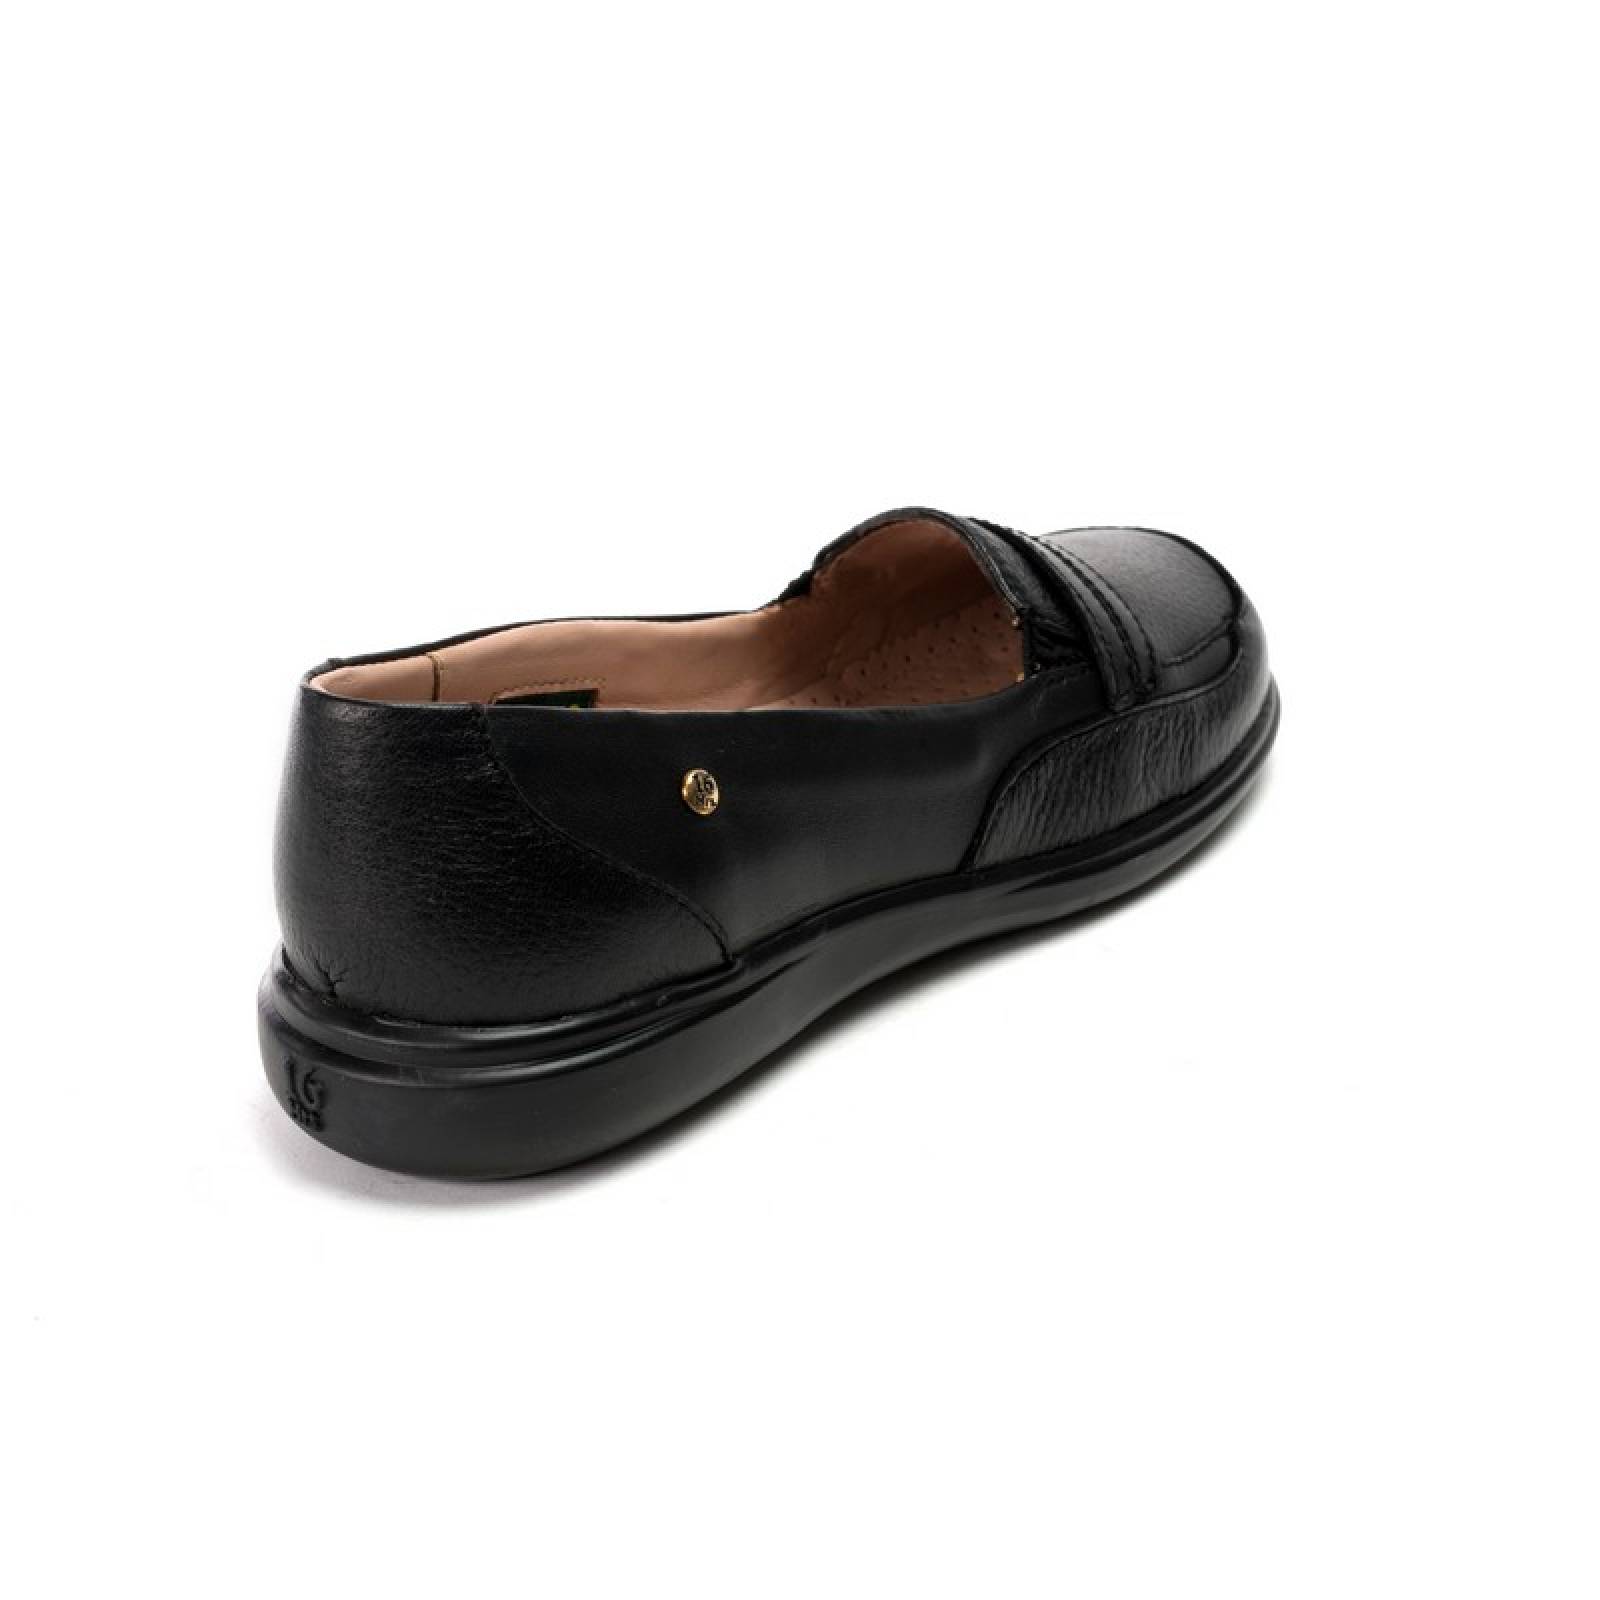 Jarking - Zapato Casual Negro Flexible con Elástico en el Empeine para Dama